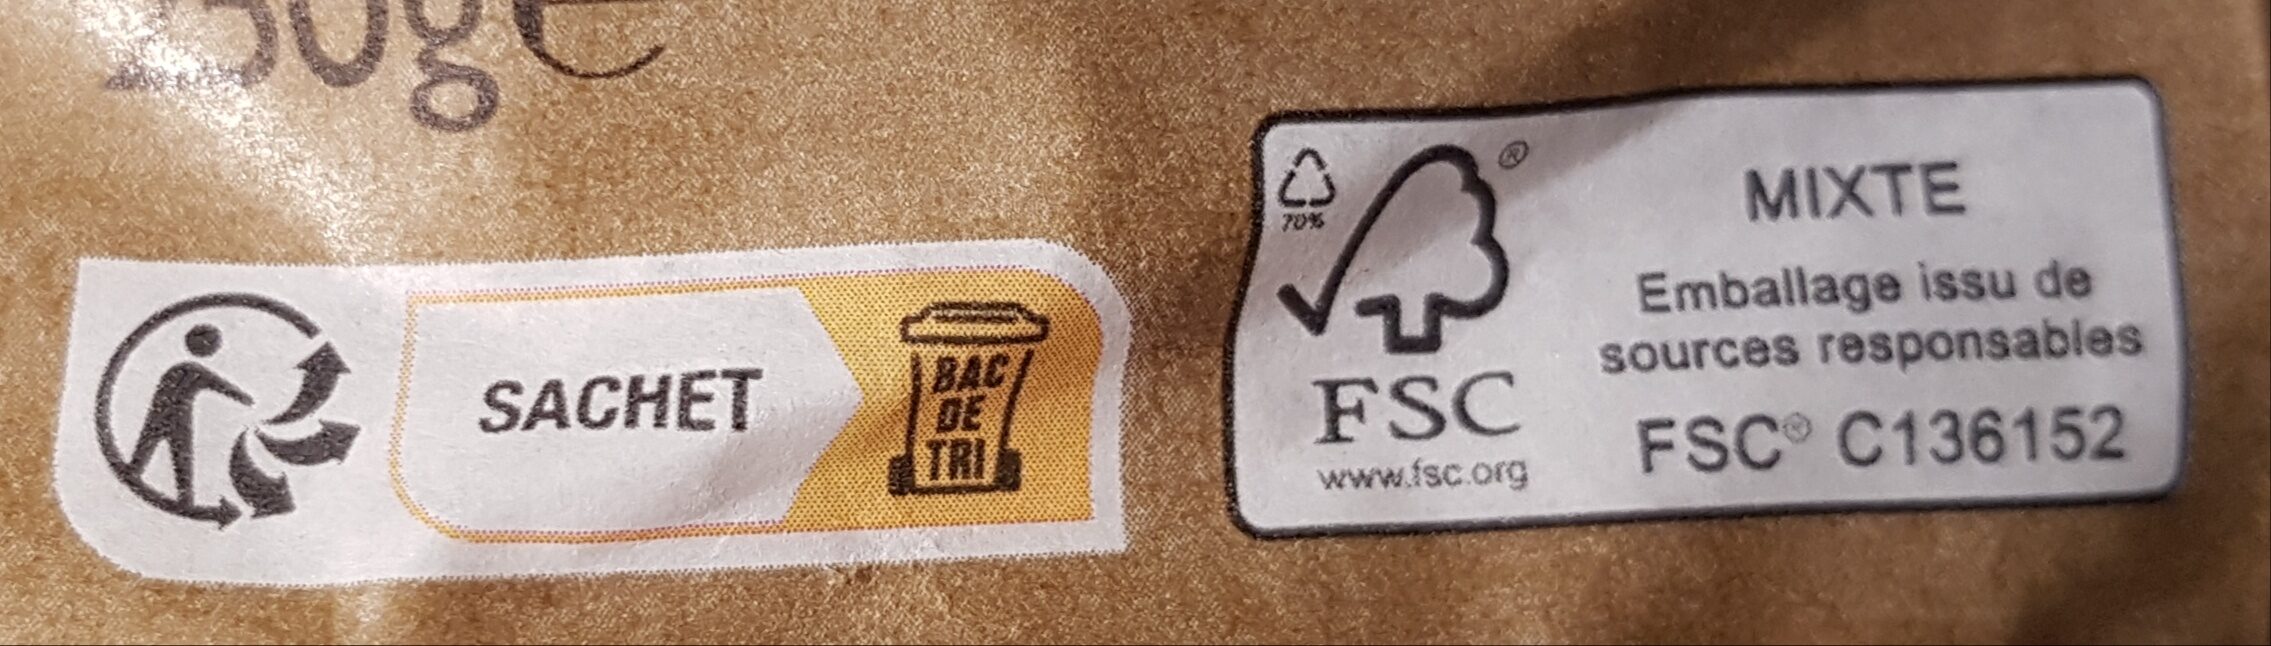 Tortellini ricotta & épinards - Instruction de recyclage et/ou informations d'emballage